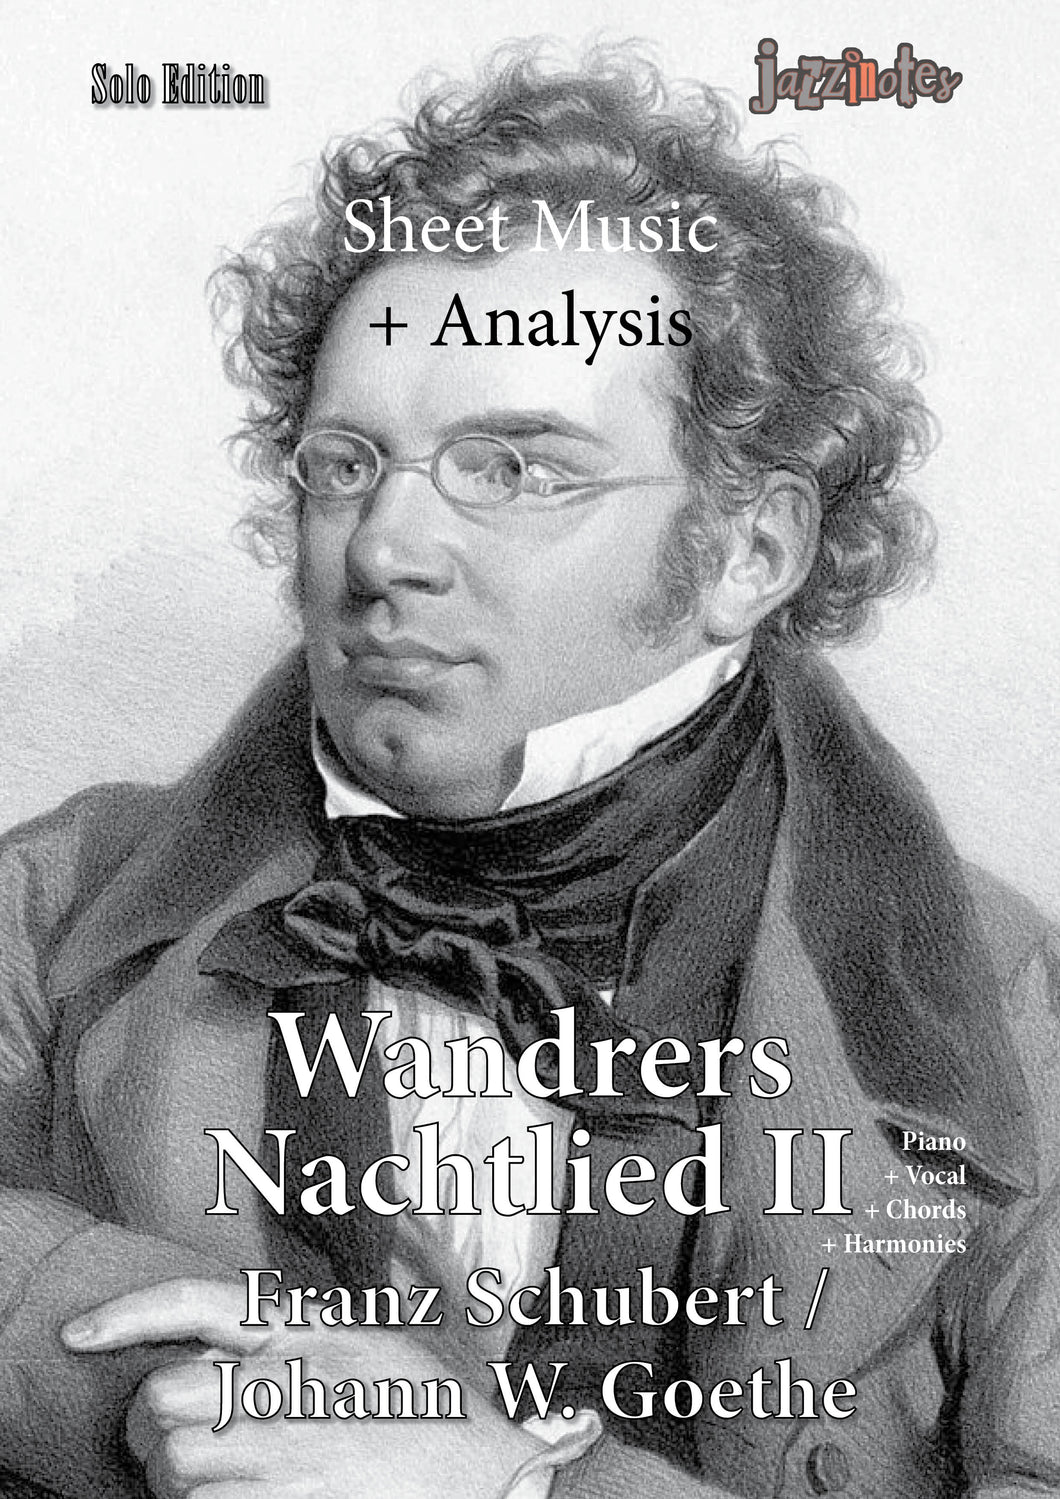 Schubert, Franz: Wandrers Nachtlied II - Sheet Music Download and Analysis